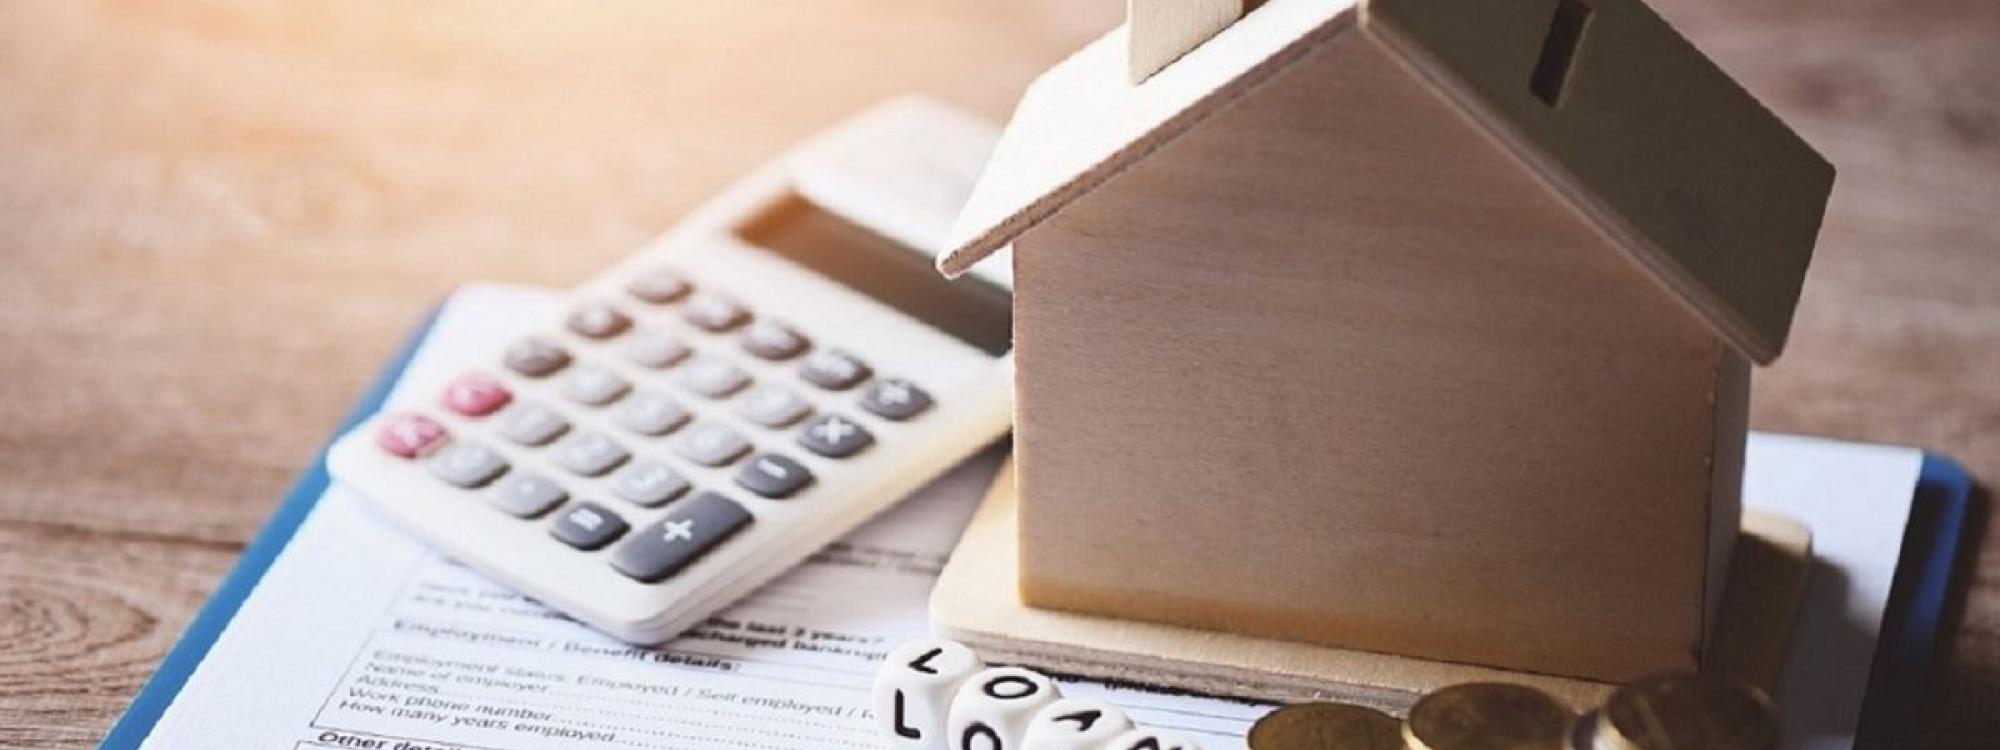 Hypotéky zlevňují, fixujte úroky na co nejkratší dobu, radí odborníci